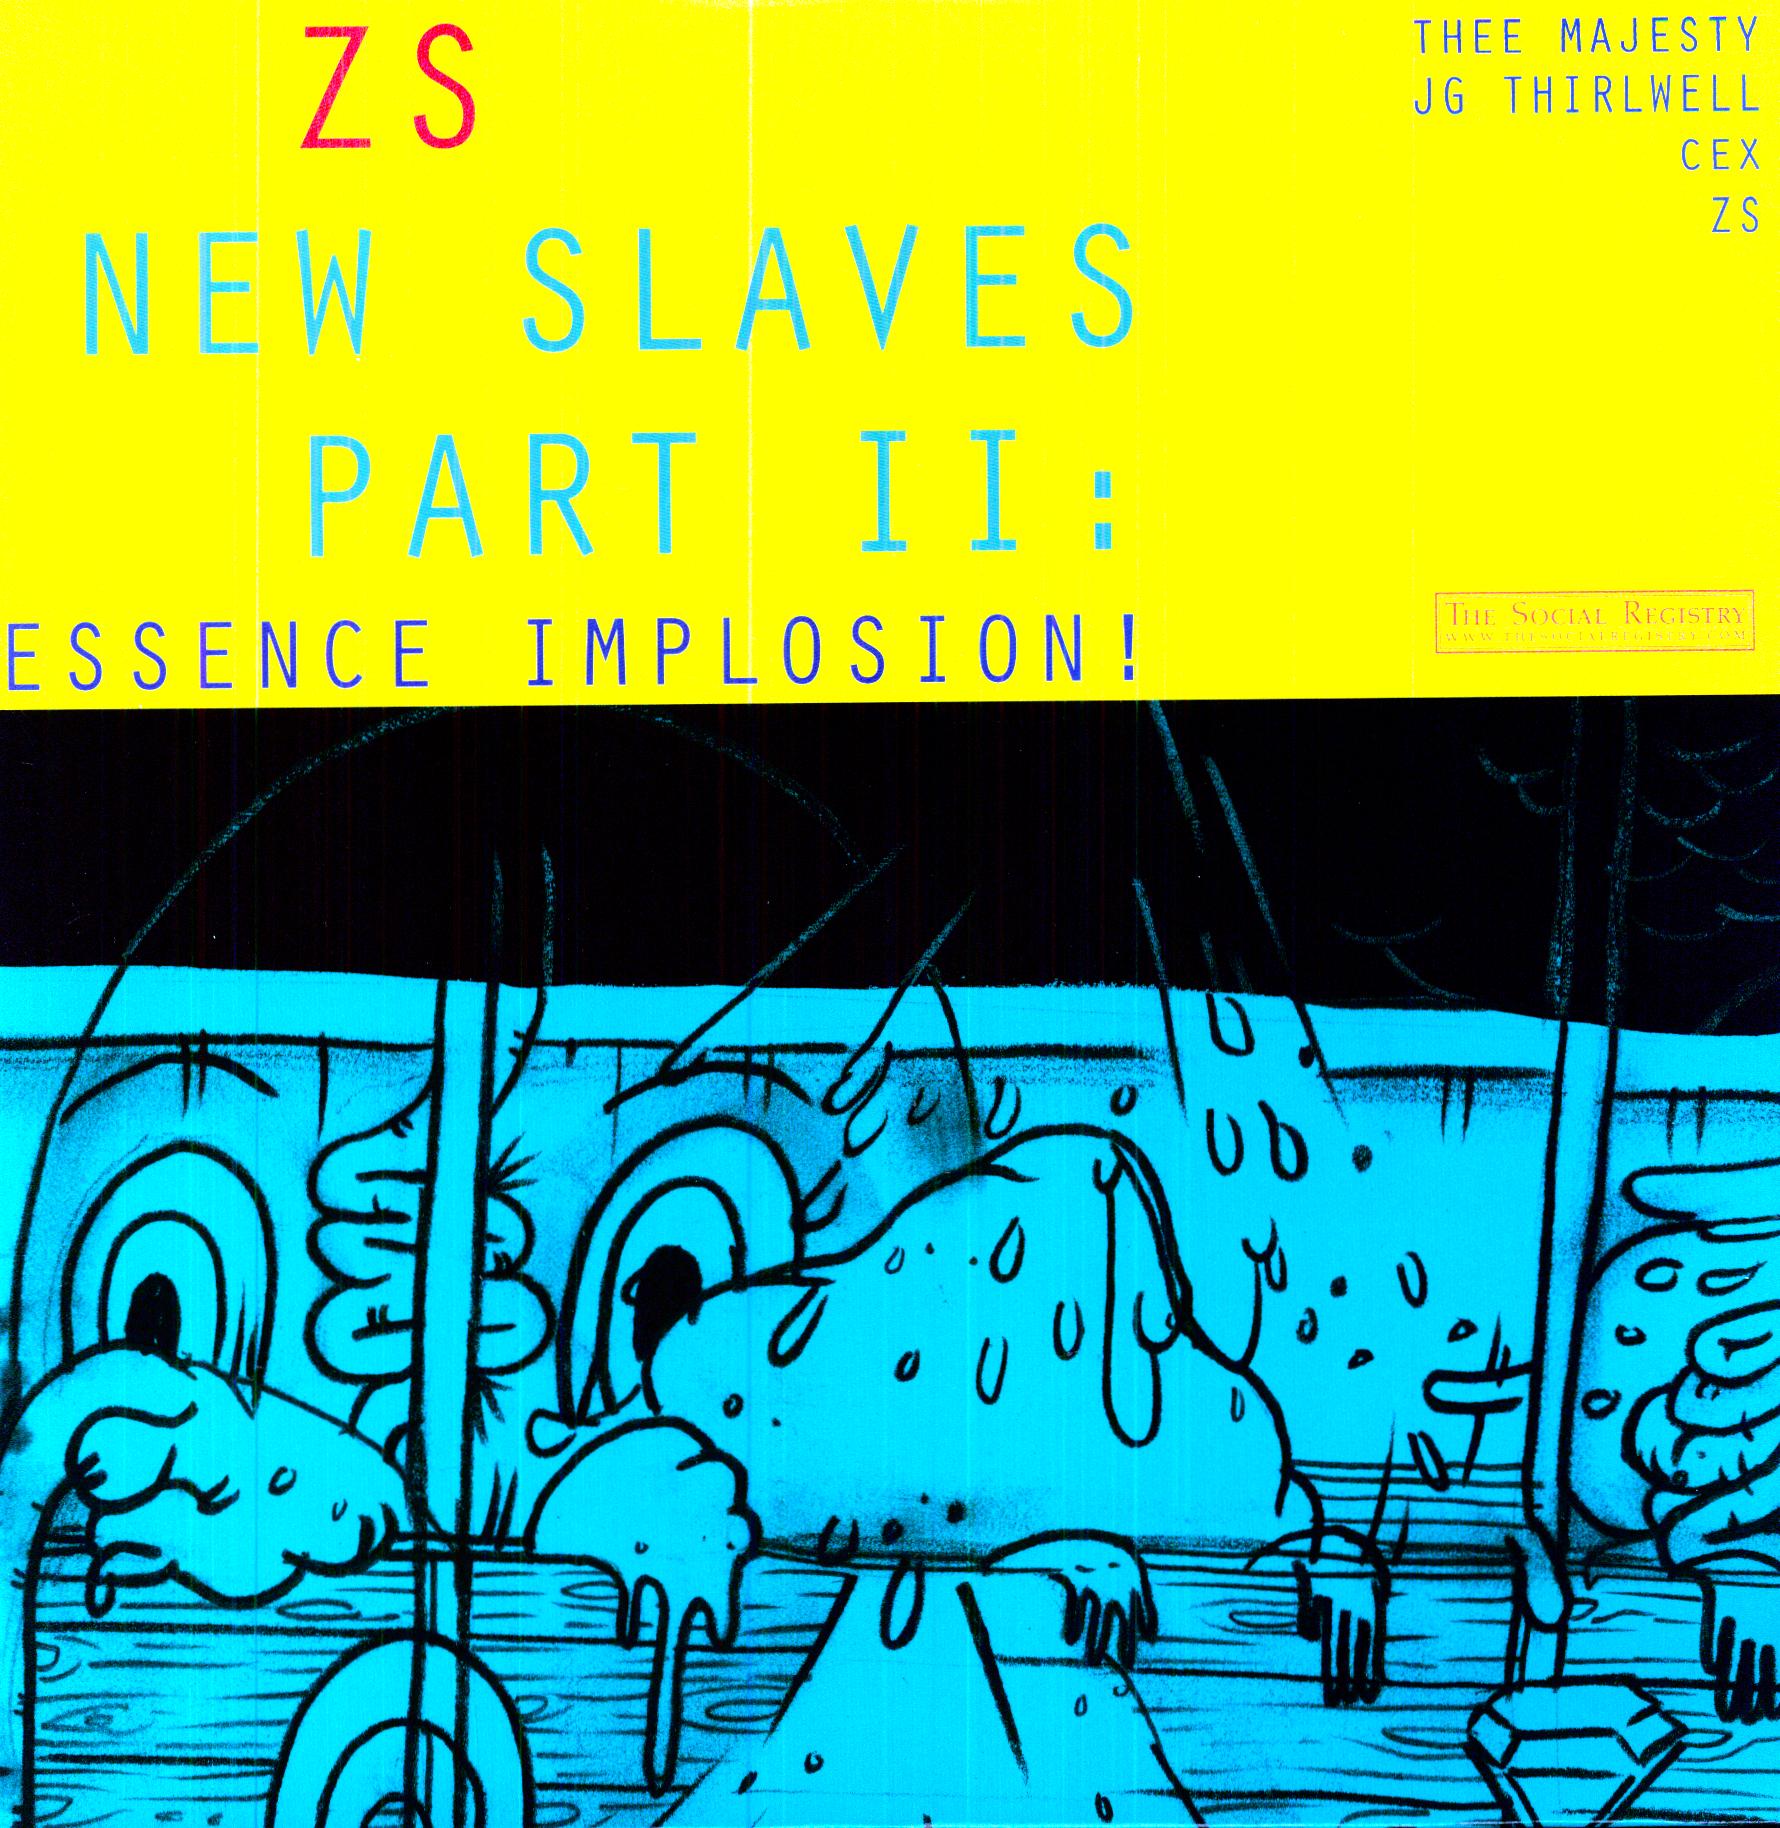 NEW SLAVES II: ESSENCE IMPLOSION